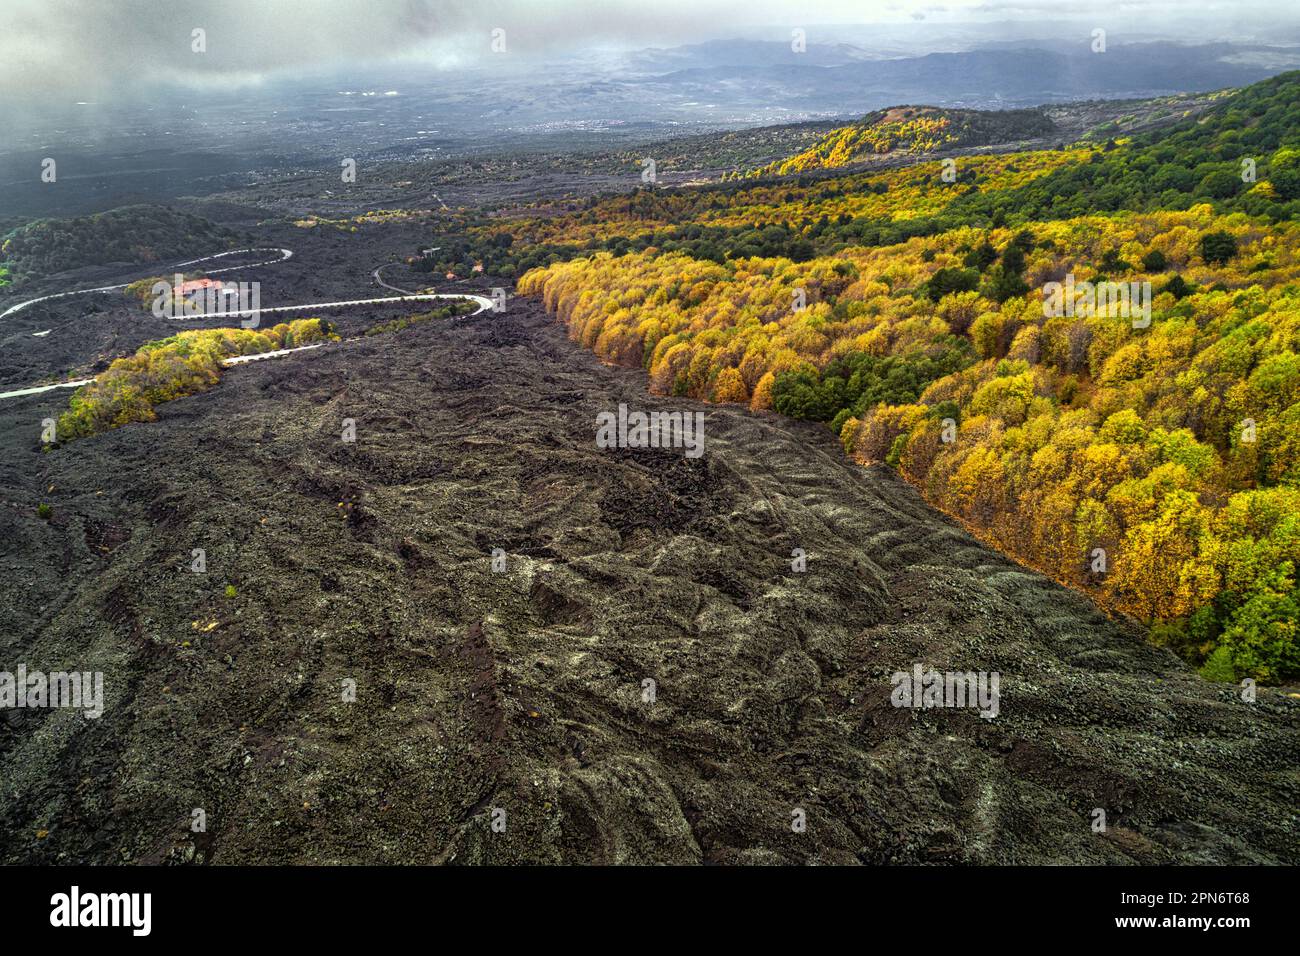 Vista aerea del flusso lavico sulle pendici del vulcano Etna, boschi di larici, faggi e pini colorano il paesaggio. Parco Nazionale dell'Etna, Sicilia, Foto Stock